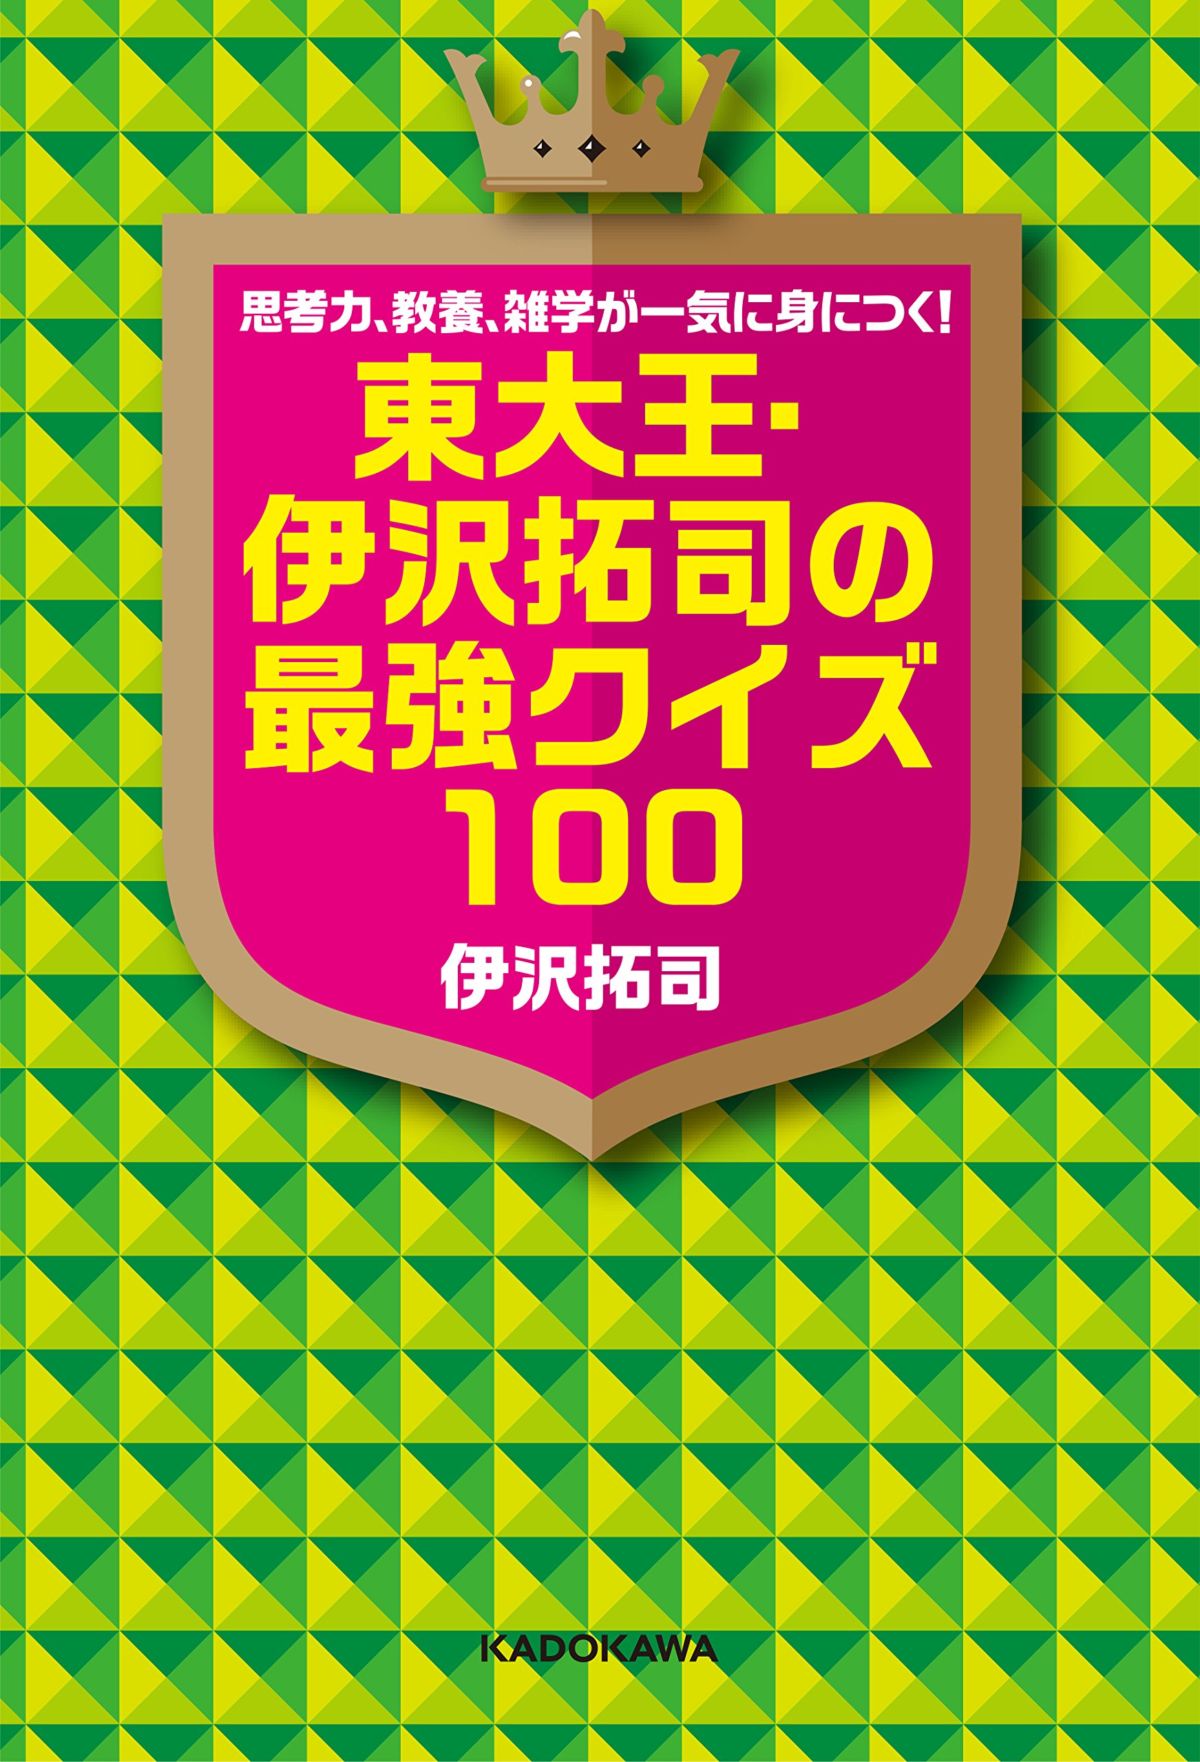 東大王 伊沢拓司が考える 日本のクイズ文化 最強クイズ100執筆秘話 インタビュー 3 ダ ヴィンチニュース